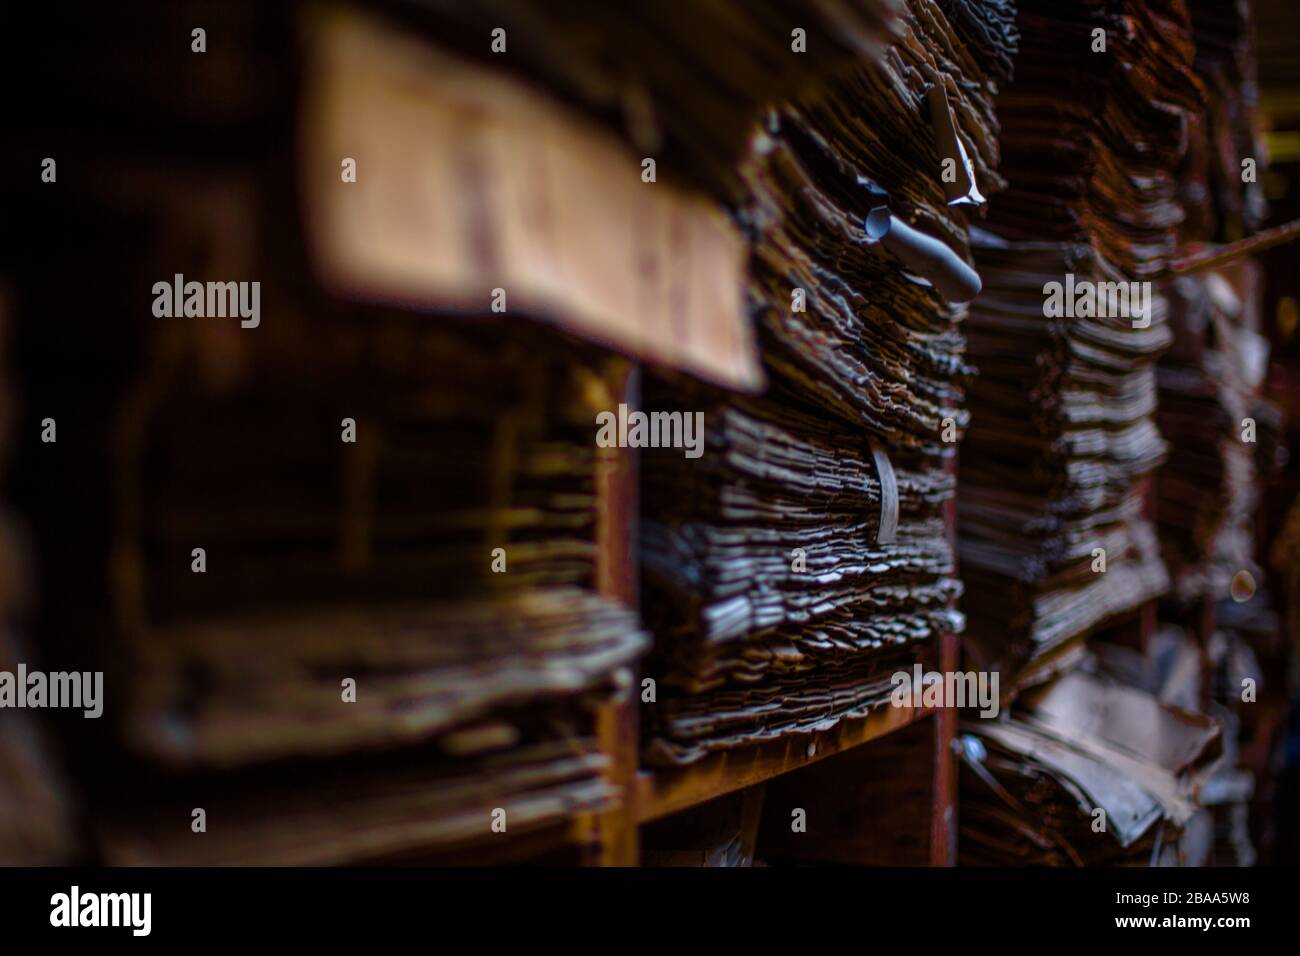 Une immense archive de documents s'empilent dans une pièce poussiéreuse oubliée, Venise Italie. Banque D'Images